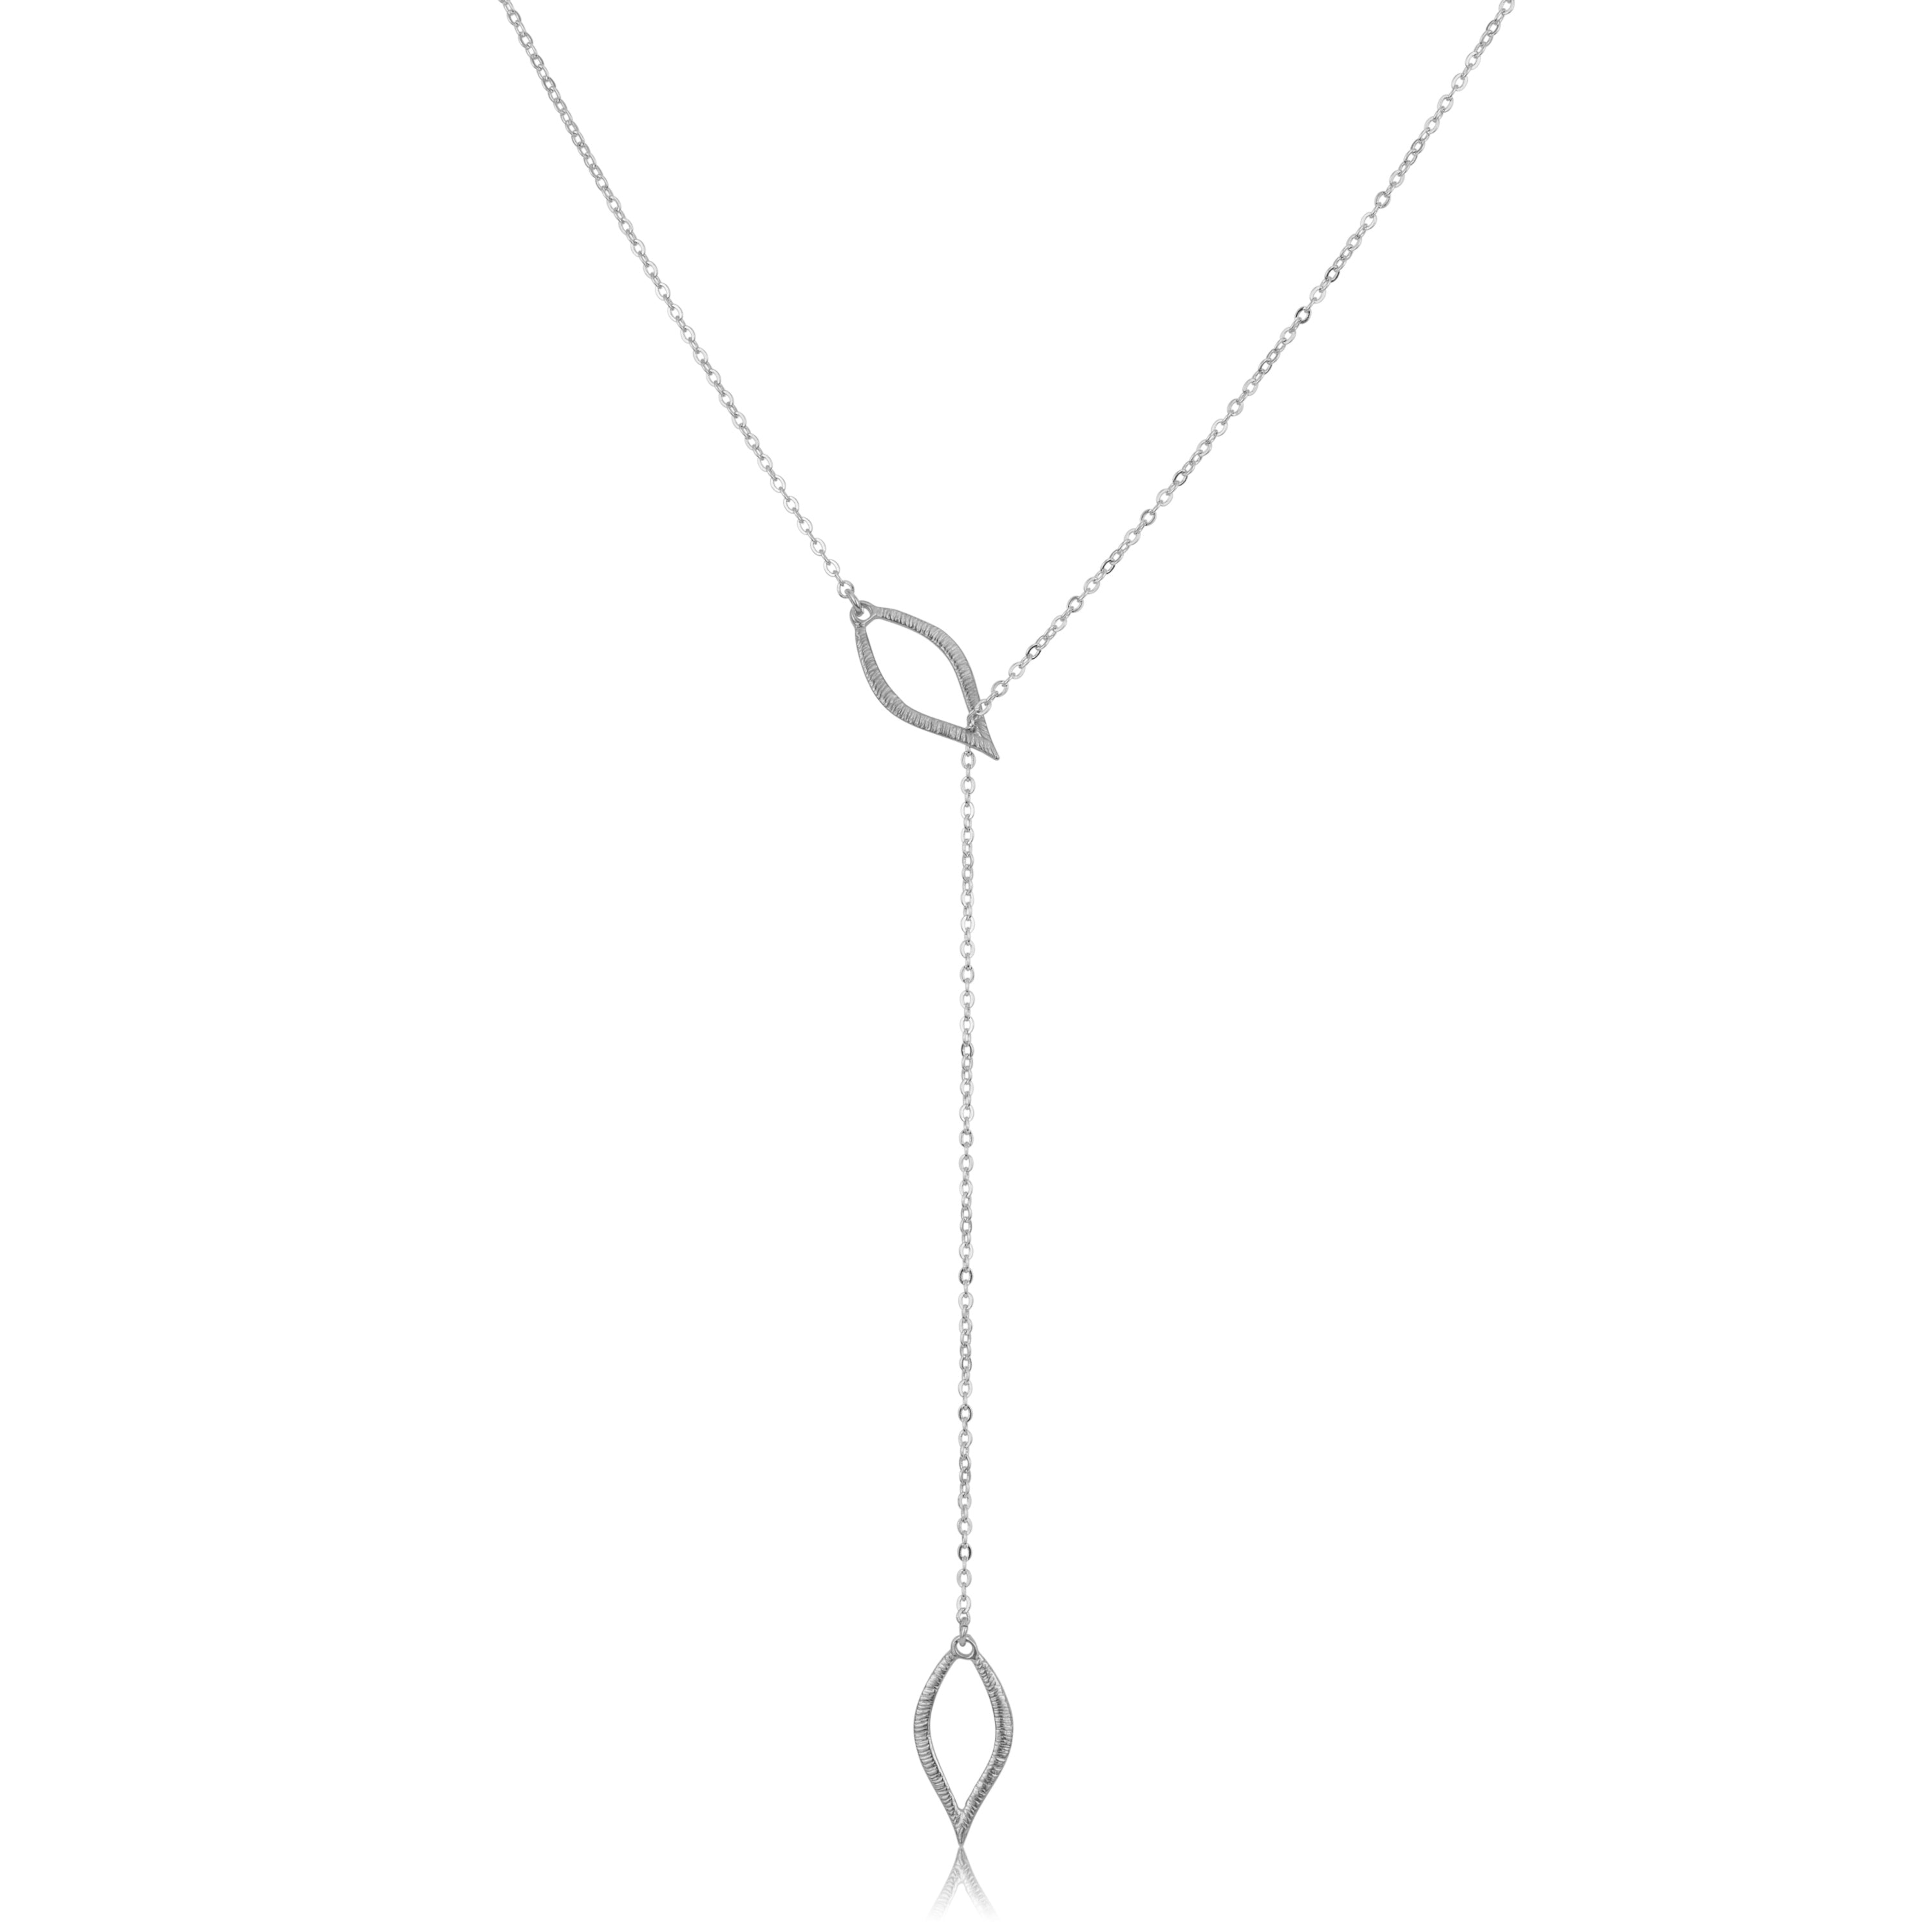 Adjustable Drop Necklace